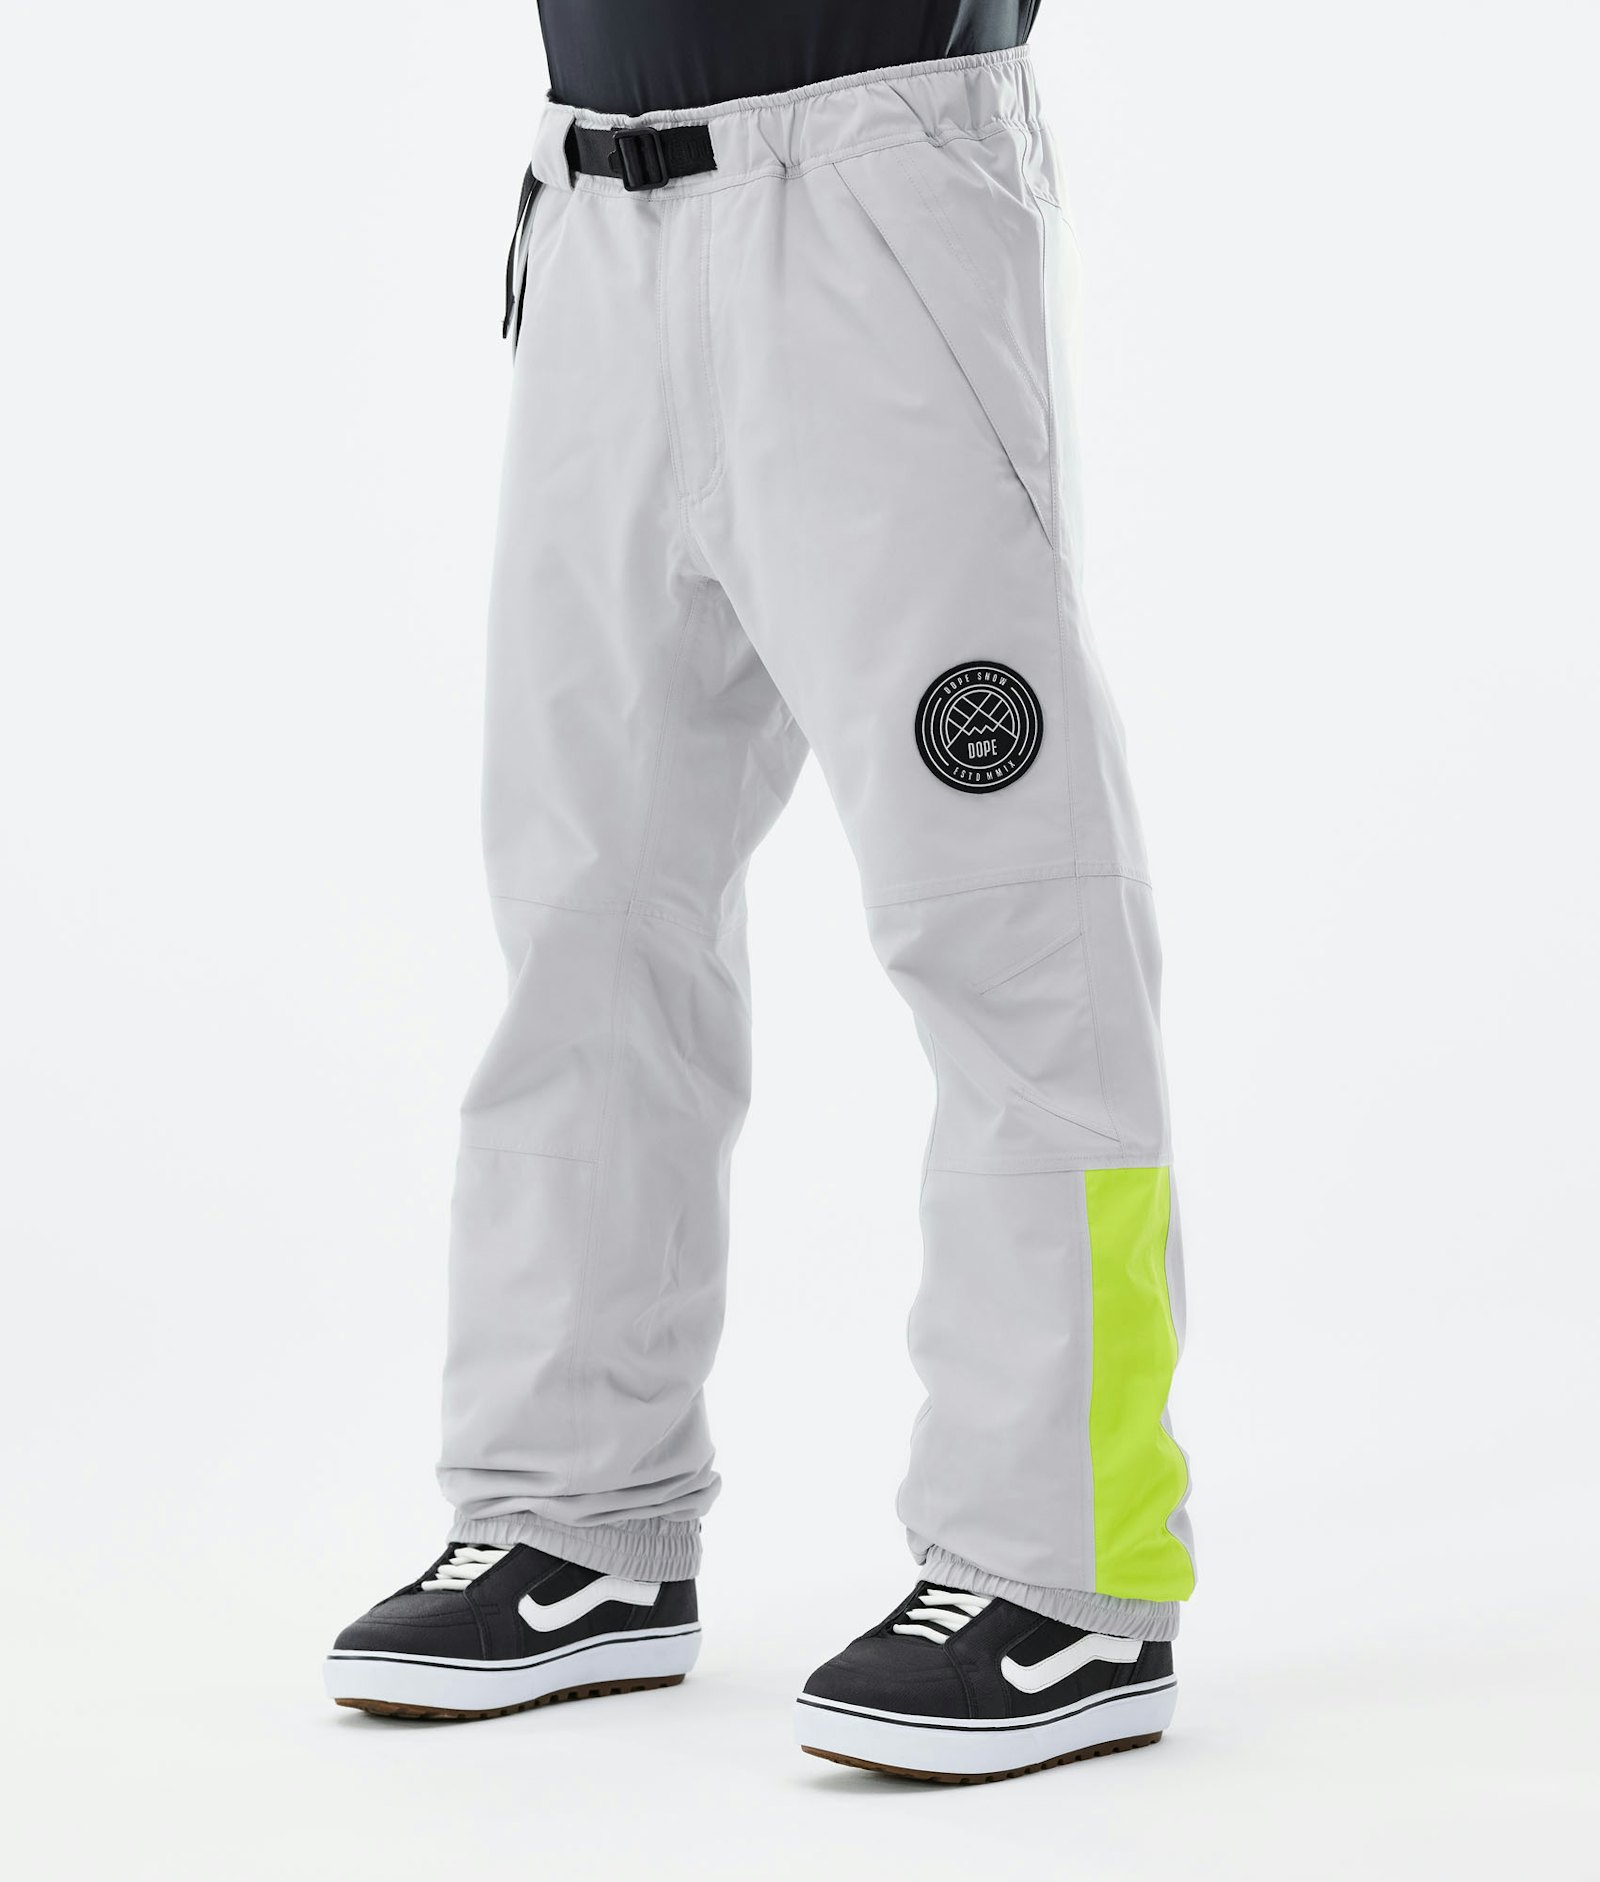 Blizzard LE Pantalon de Snowboard Homme Limited Edition Stripe Light Grey